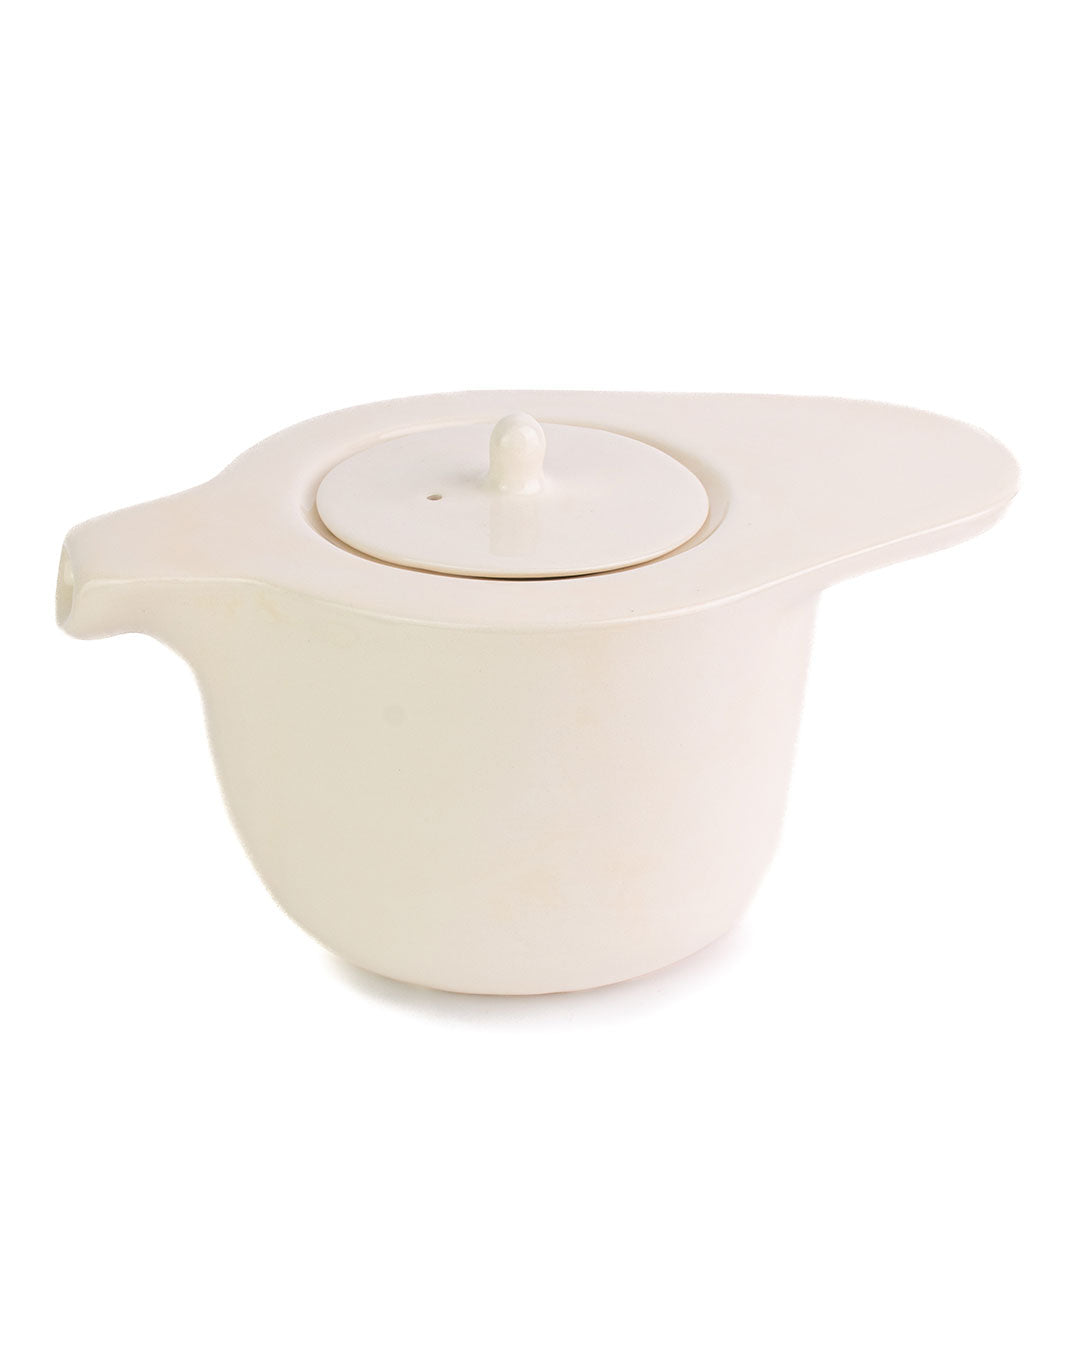 Ameno Tea Pot with Strainer white_pottery_nu ceramica